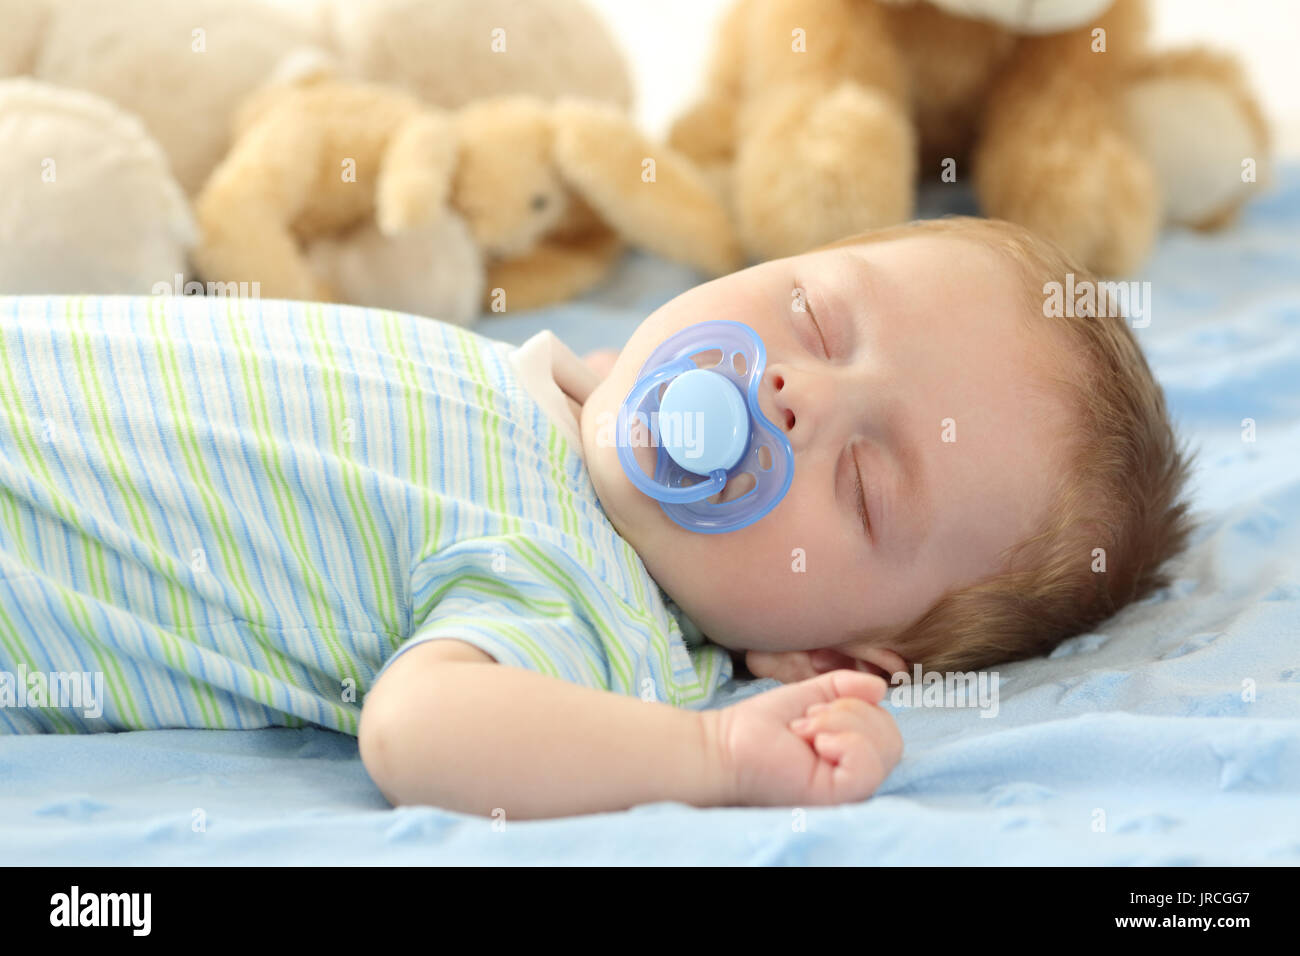 Cute Baby schläft mit einem Schnuller auf einem Bett. Stockfoto